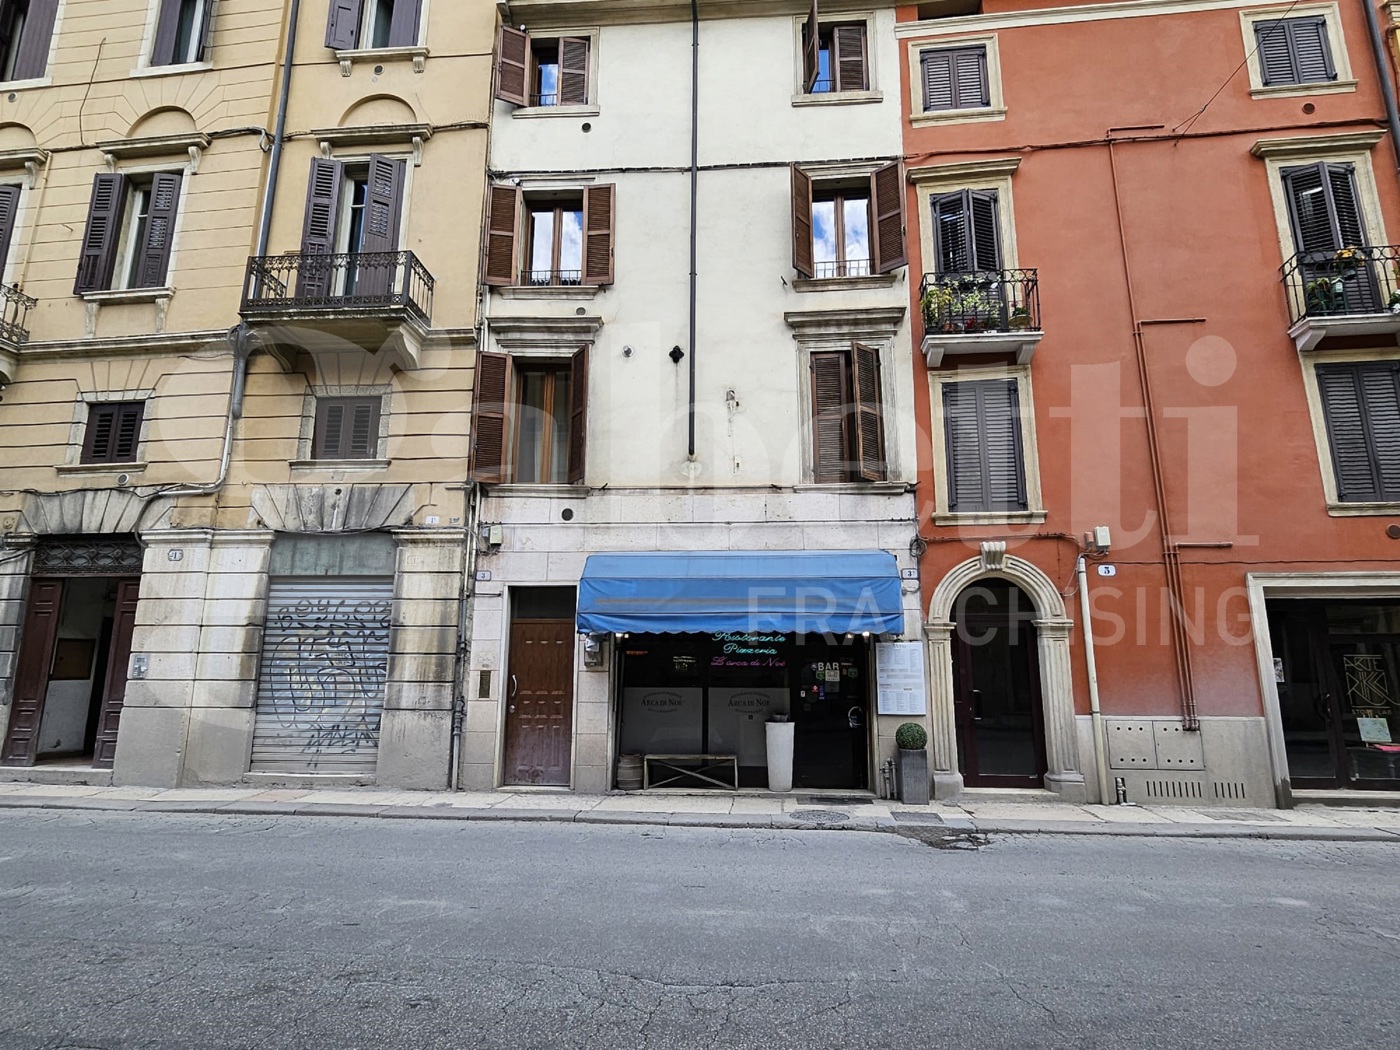 Attivit commerciale Ristorante e pizzeria in vendita a Verona